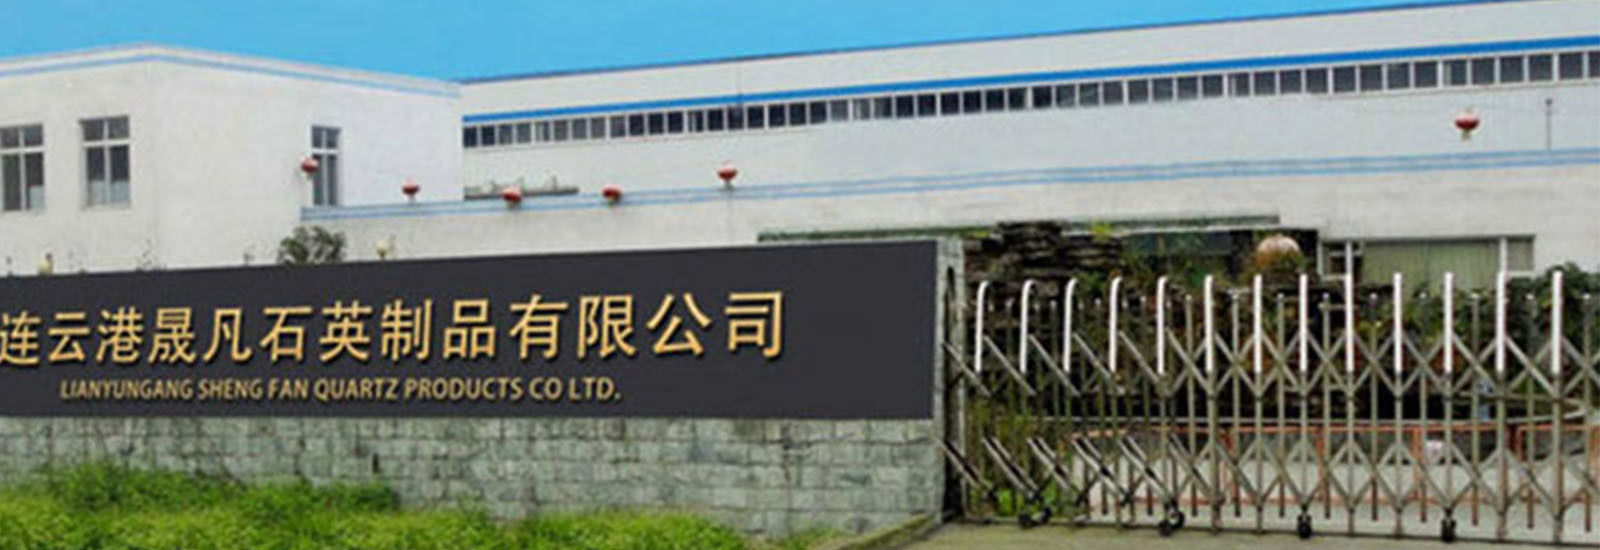 چین Lianyungang Shengfan Quartz Product Co., Ltd نمایه شرکت